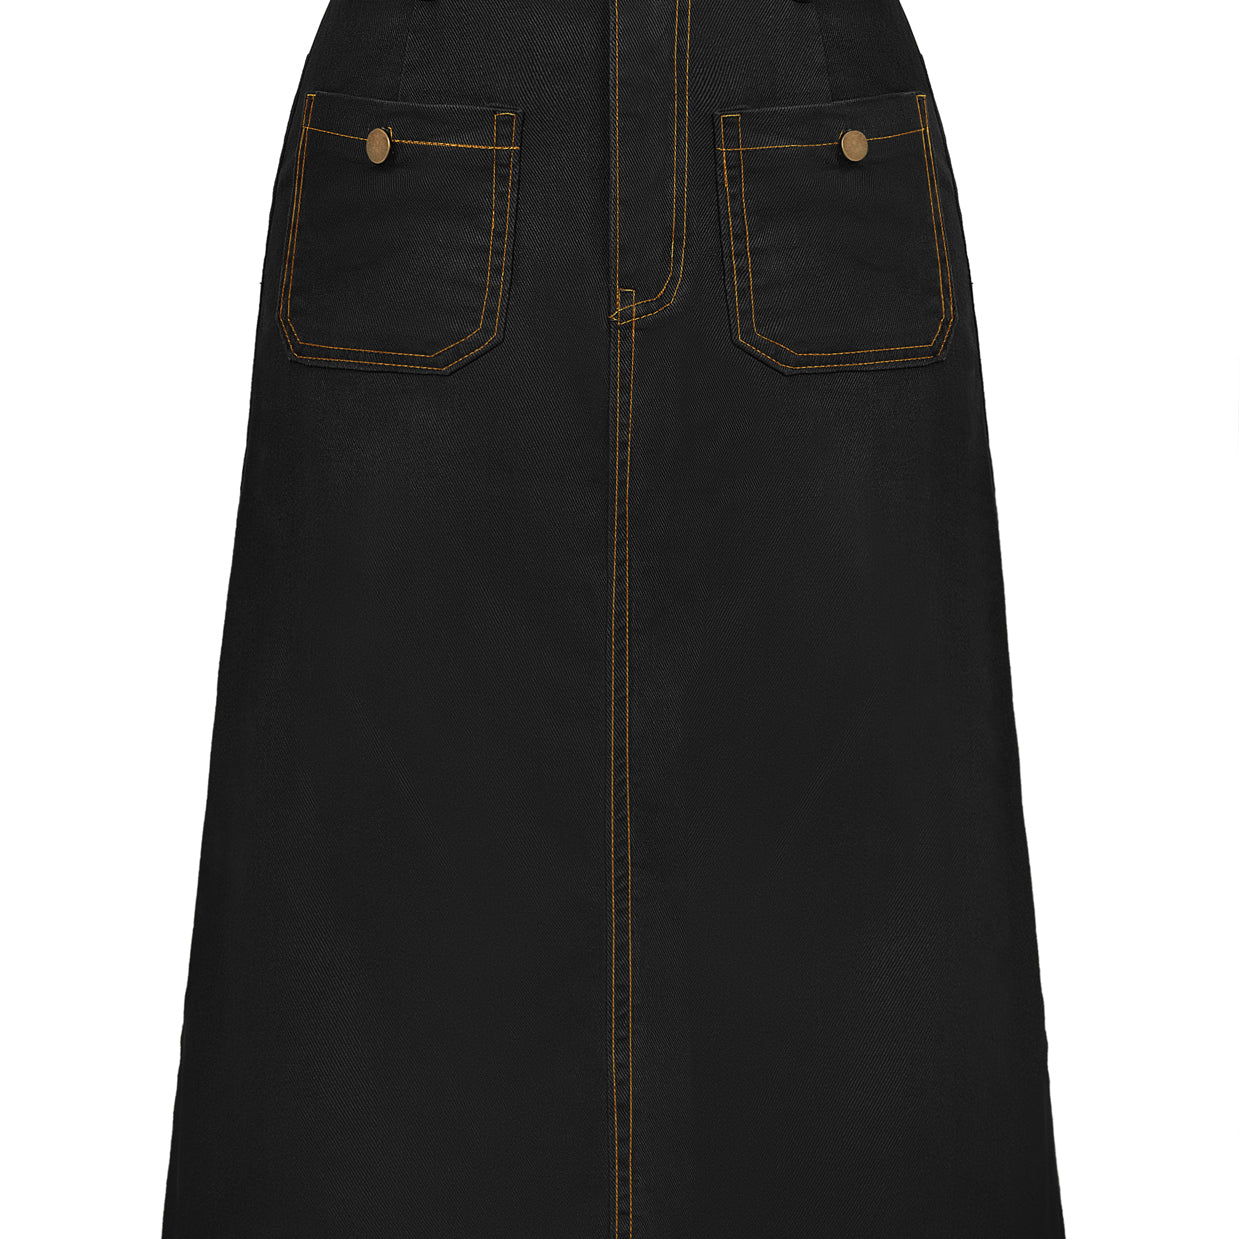 Denim Skirt with Belt Knee Length High Waisted Jean Skirts for Women